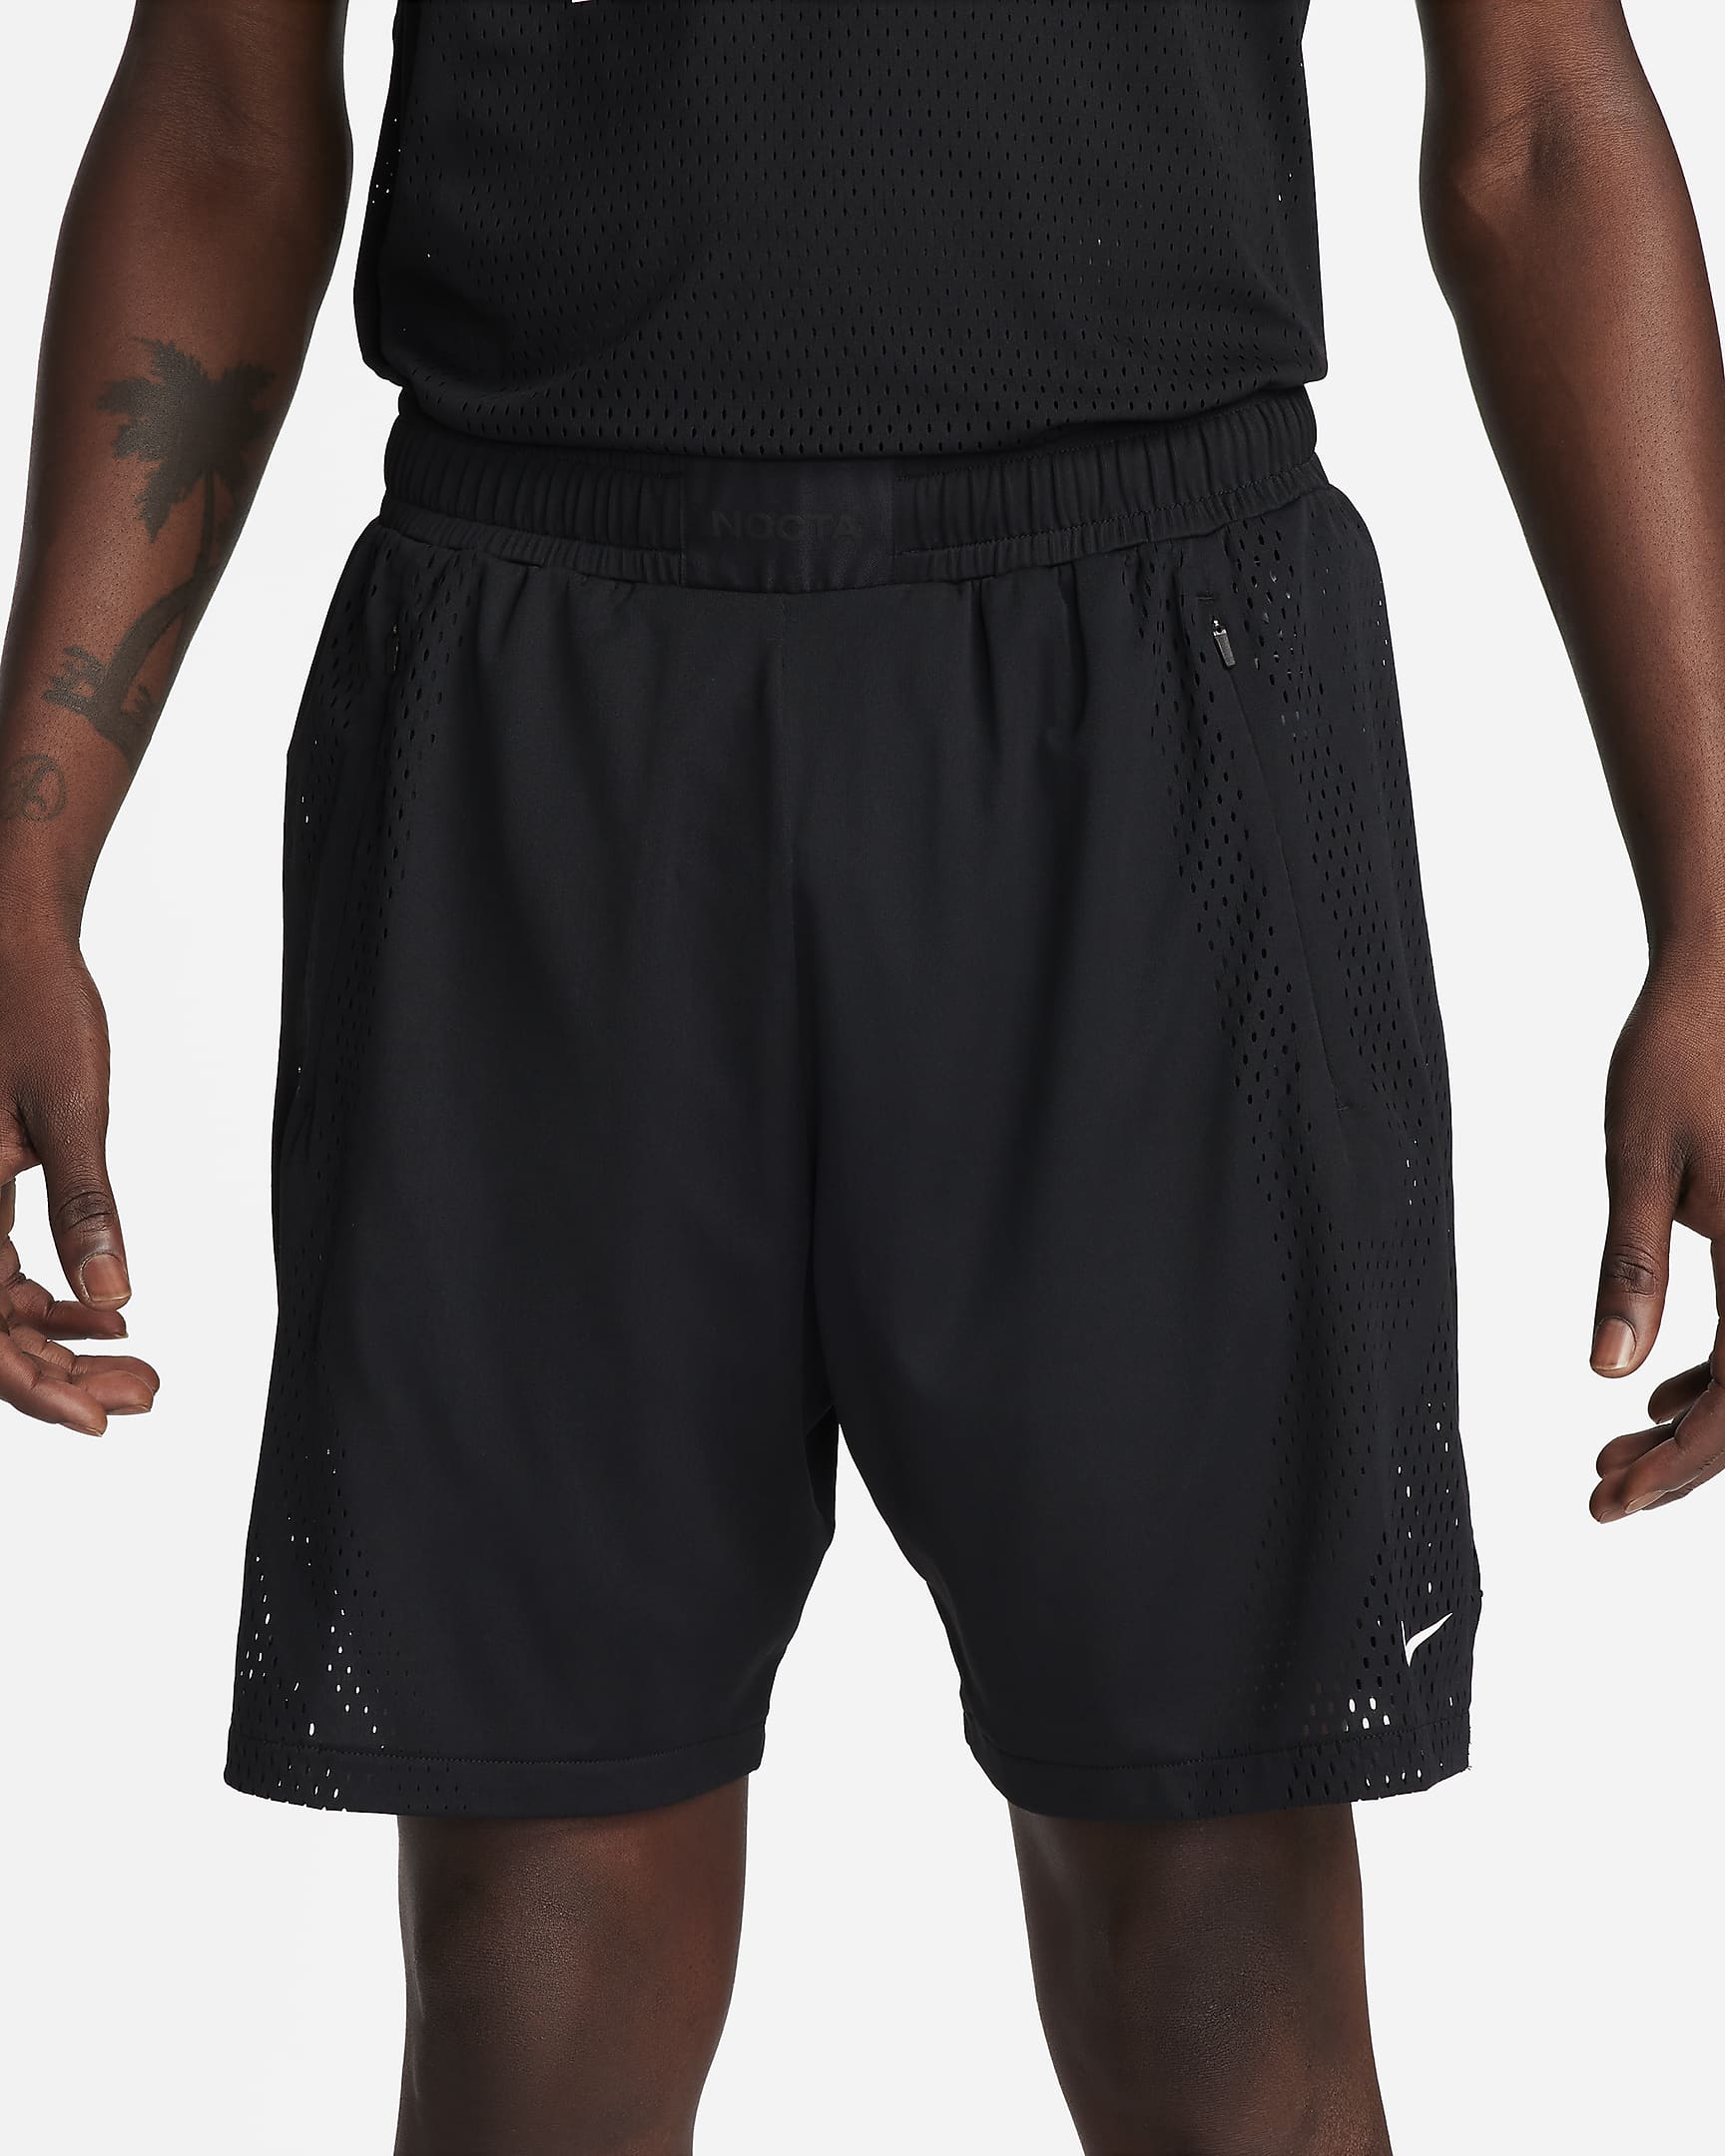 NOCTA Men's Dri-FIT Shorts. Nike.com